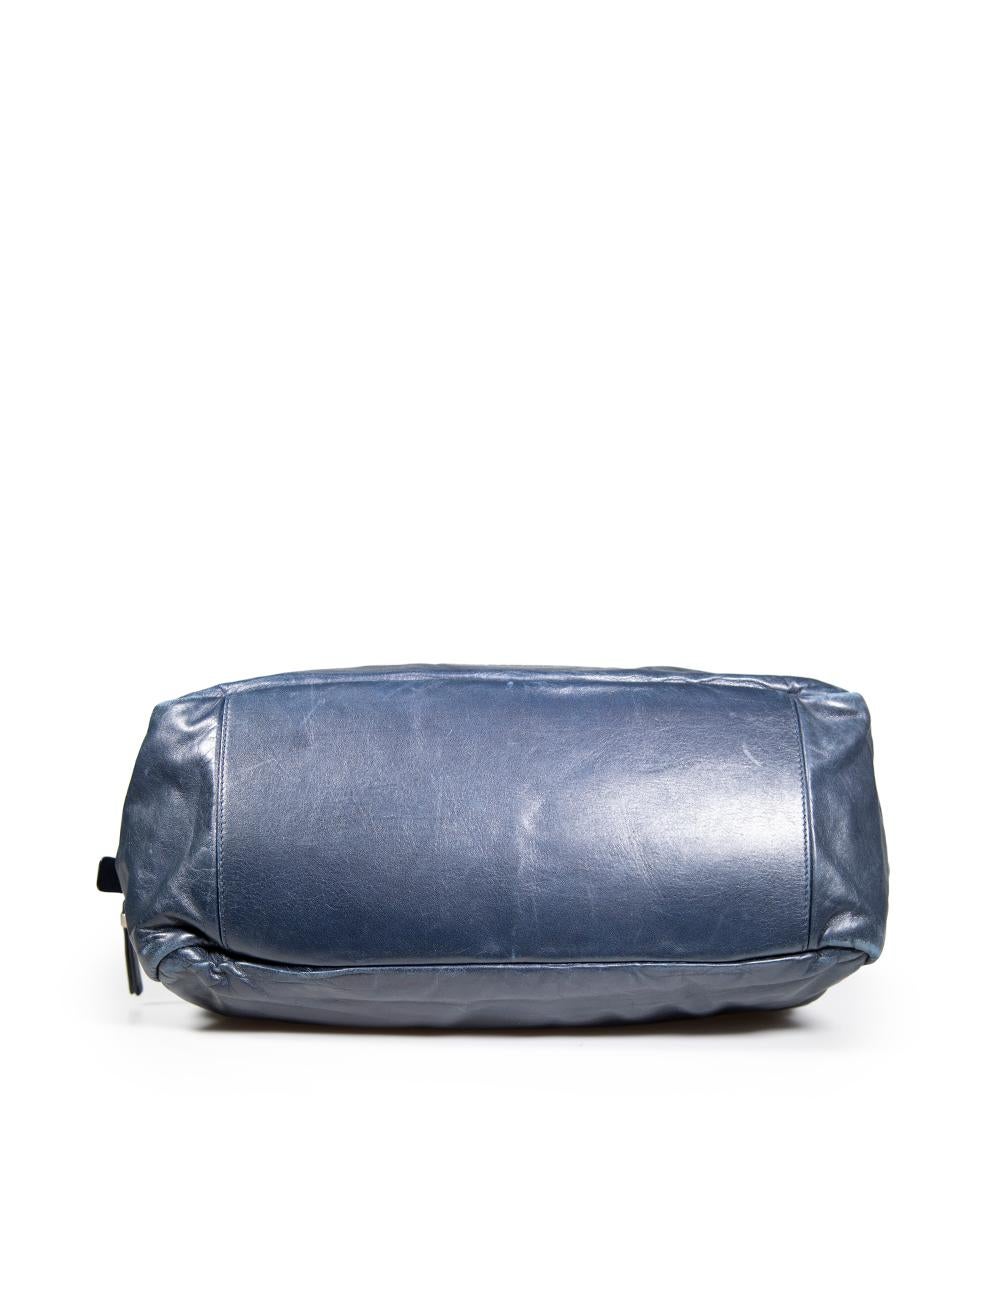 Women's Jil Sander Navy Leather Shoulder Bag For Sale